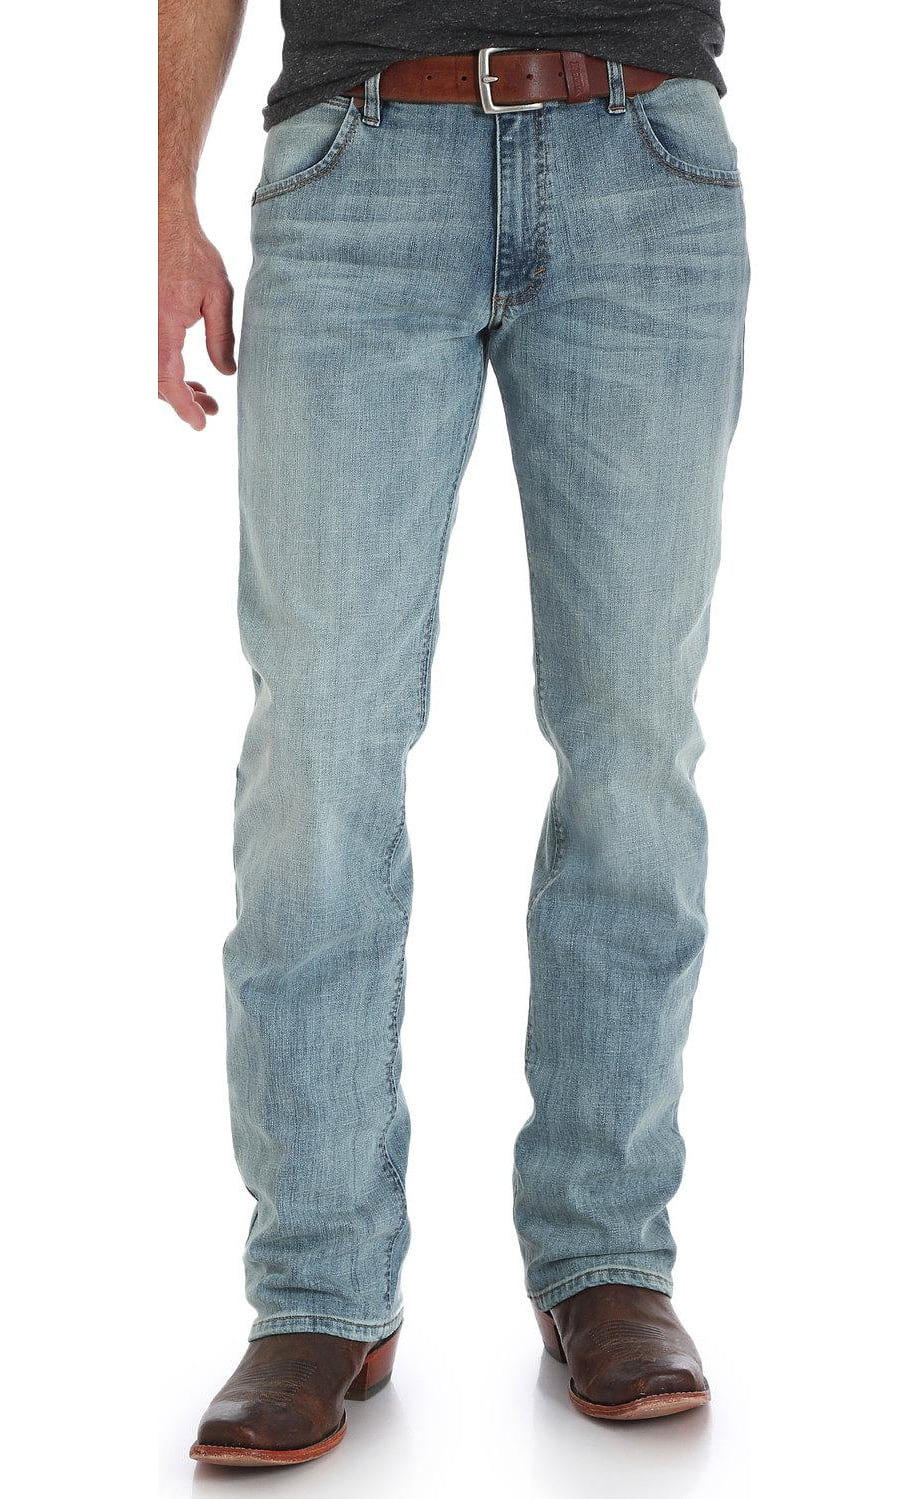 Indigo Retro Slim Fit Jeans Boot Cut 